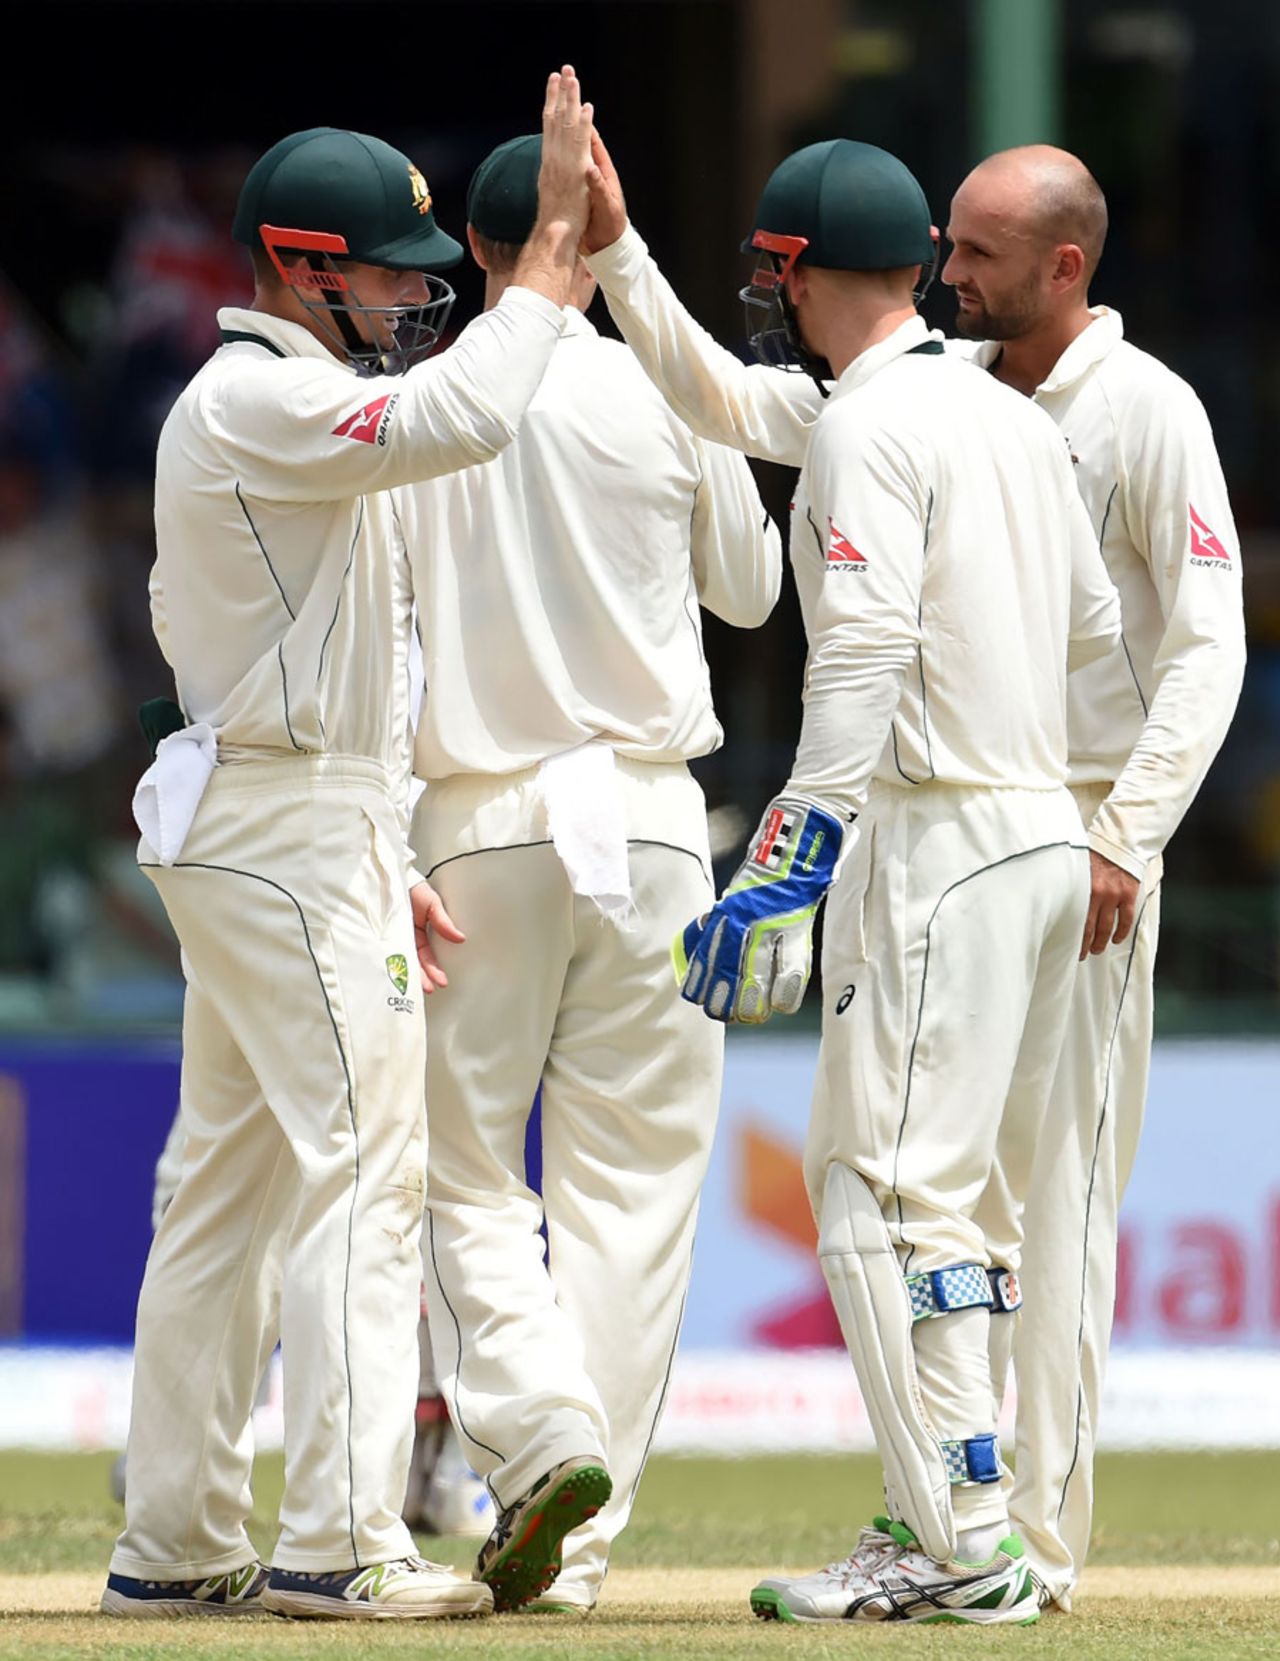 Australia get together after Nathan Lyon's dismissal of Dhananjaya de Silva, Sri Lanka v Australia, 3rd Test, SSC, 2nd day, August 14, 2016